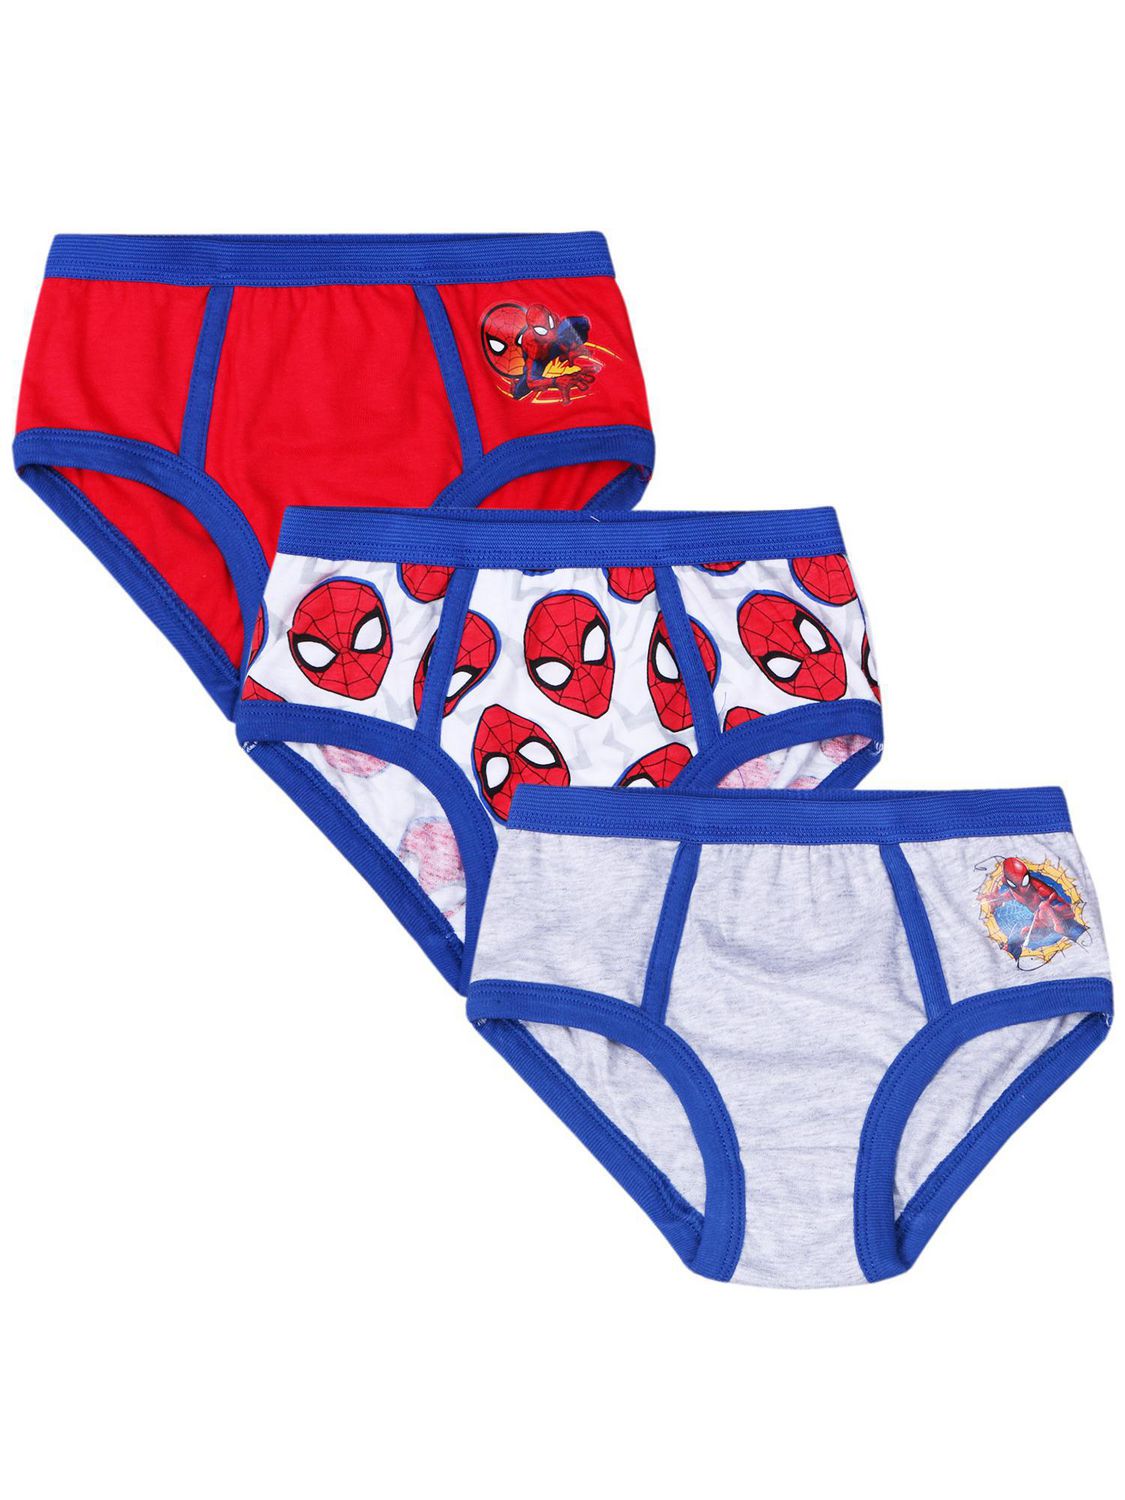 Spiderman Underwear -  Canada